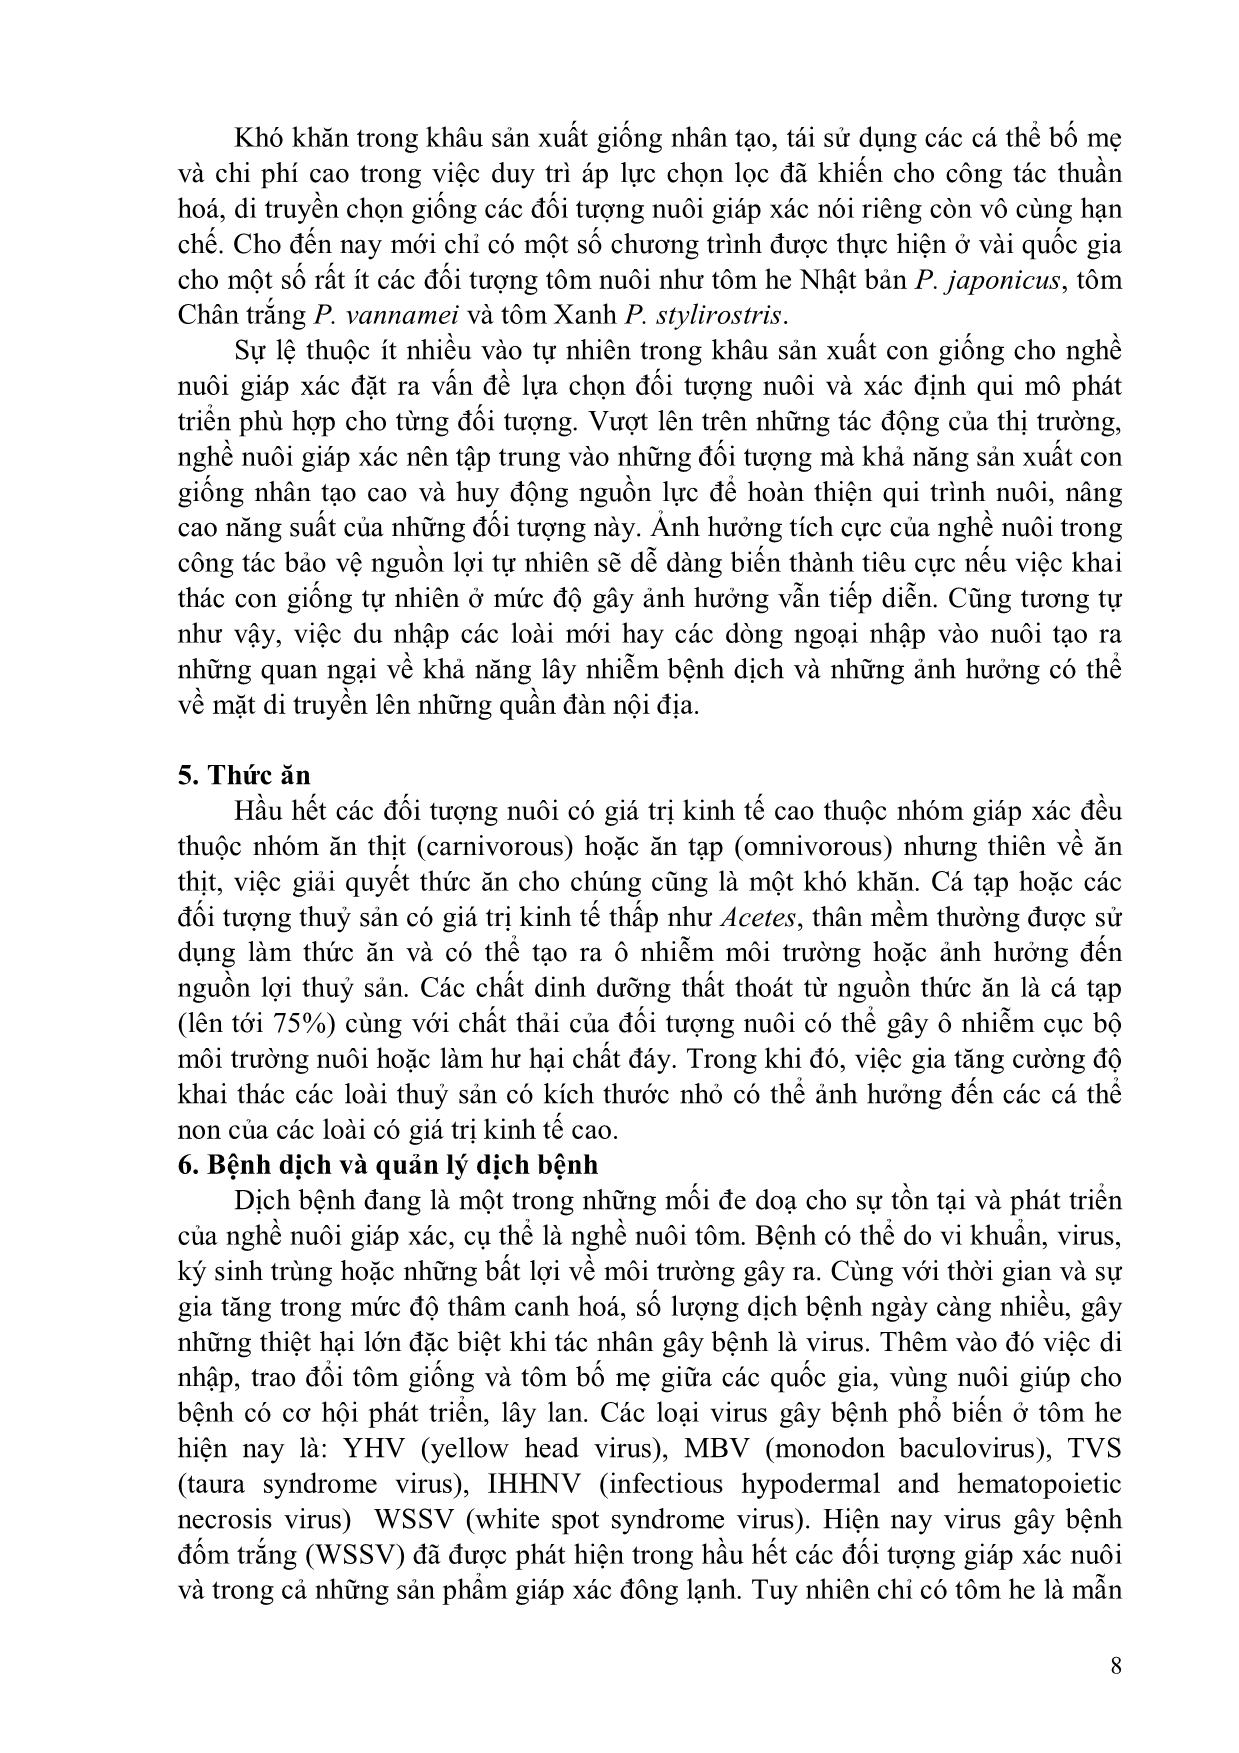 Bài giảng Sản xuất giống và nuôi giáp xác trang 8